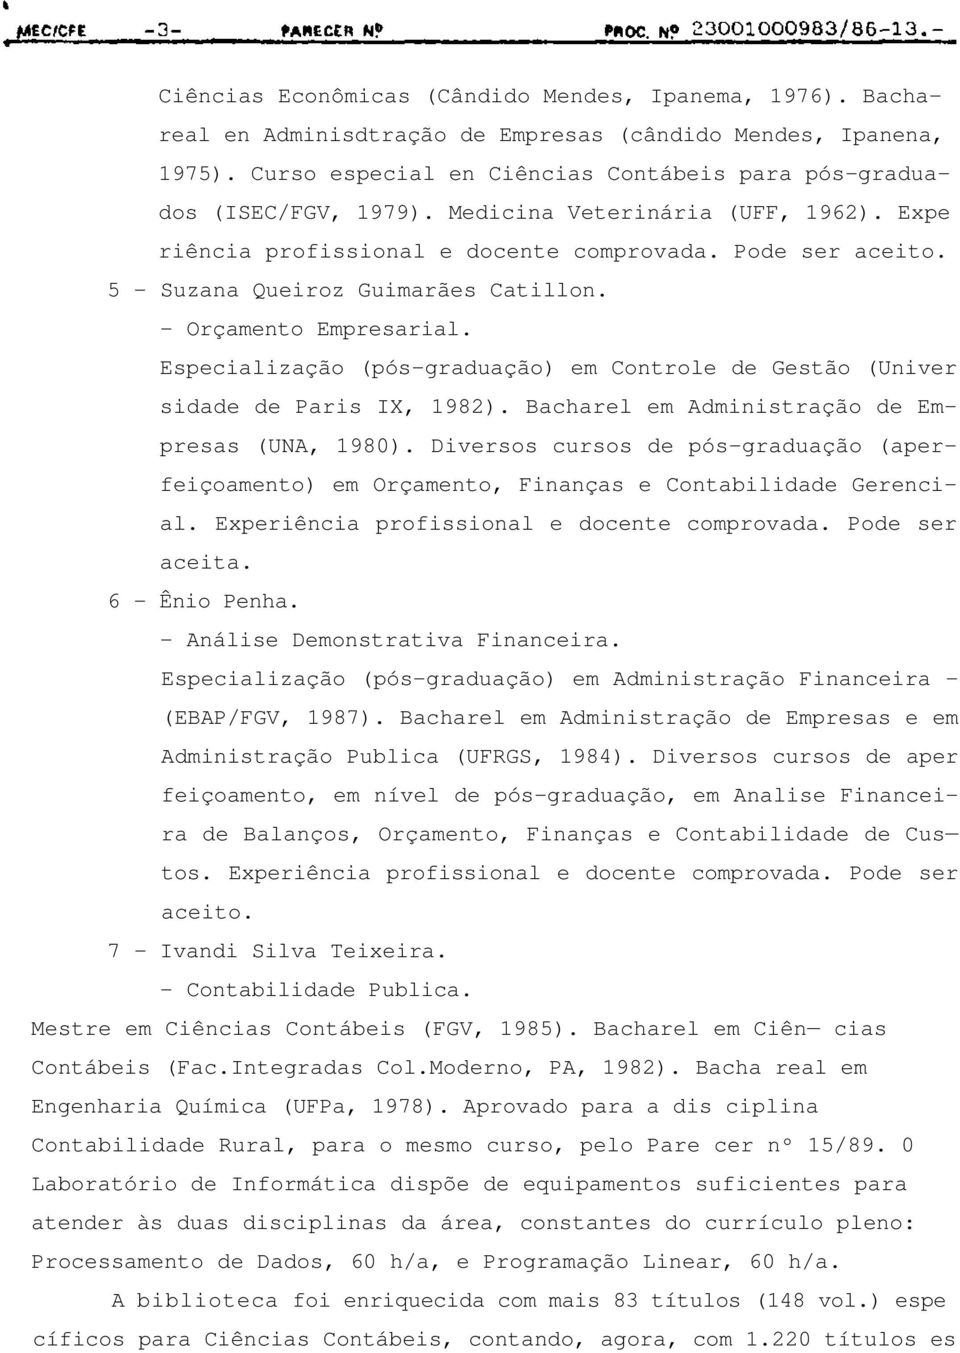 Especialização (pós-graduação) em Controle de Gestão (Univer sidade de Paris IX, 1982). Bacharel em Administração de Empresas (UNA, 1980).